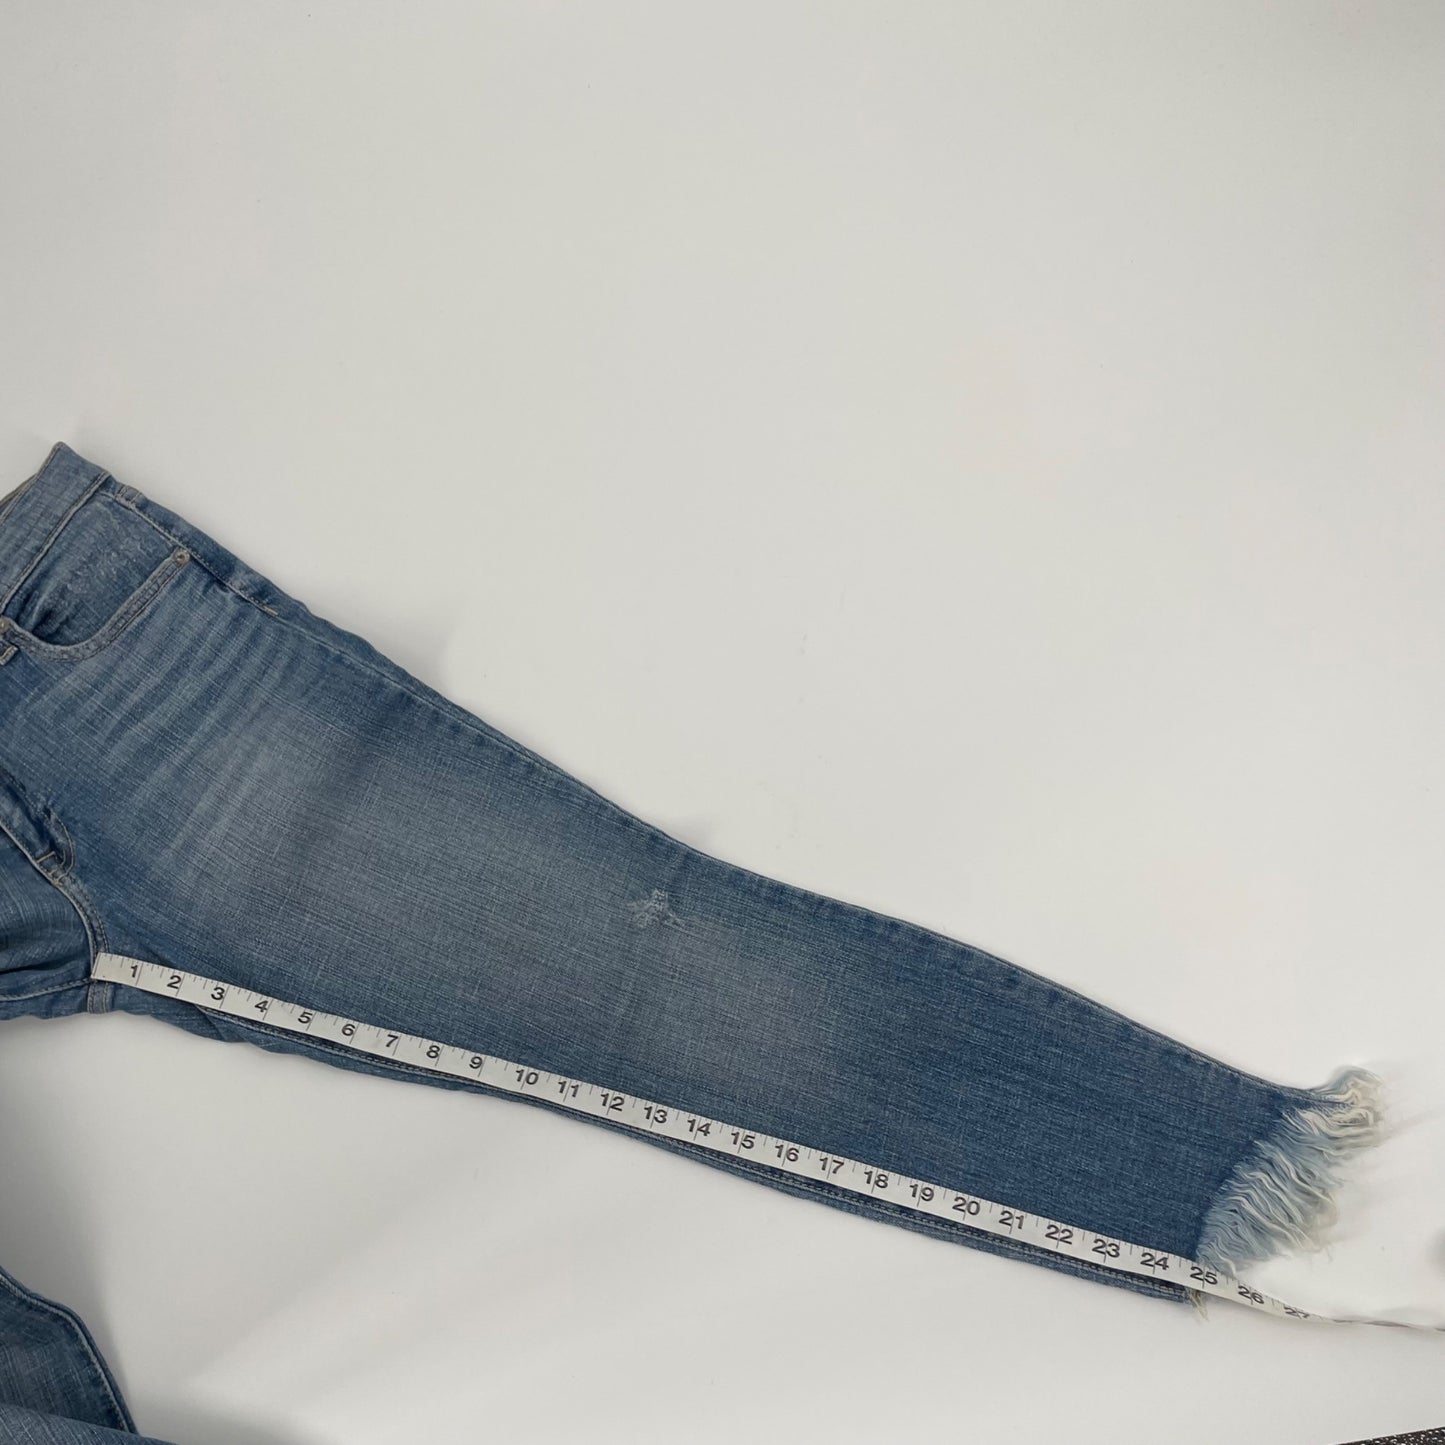 NWT Pistola Audrey Mid Rise Skinny Raw Hem Jeans Womens Size 29 Stretch Denim